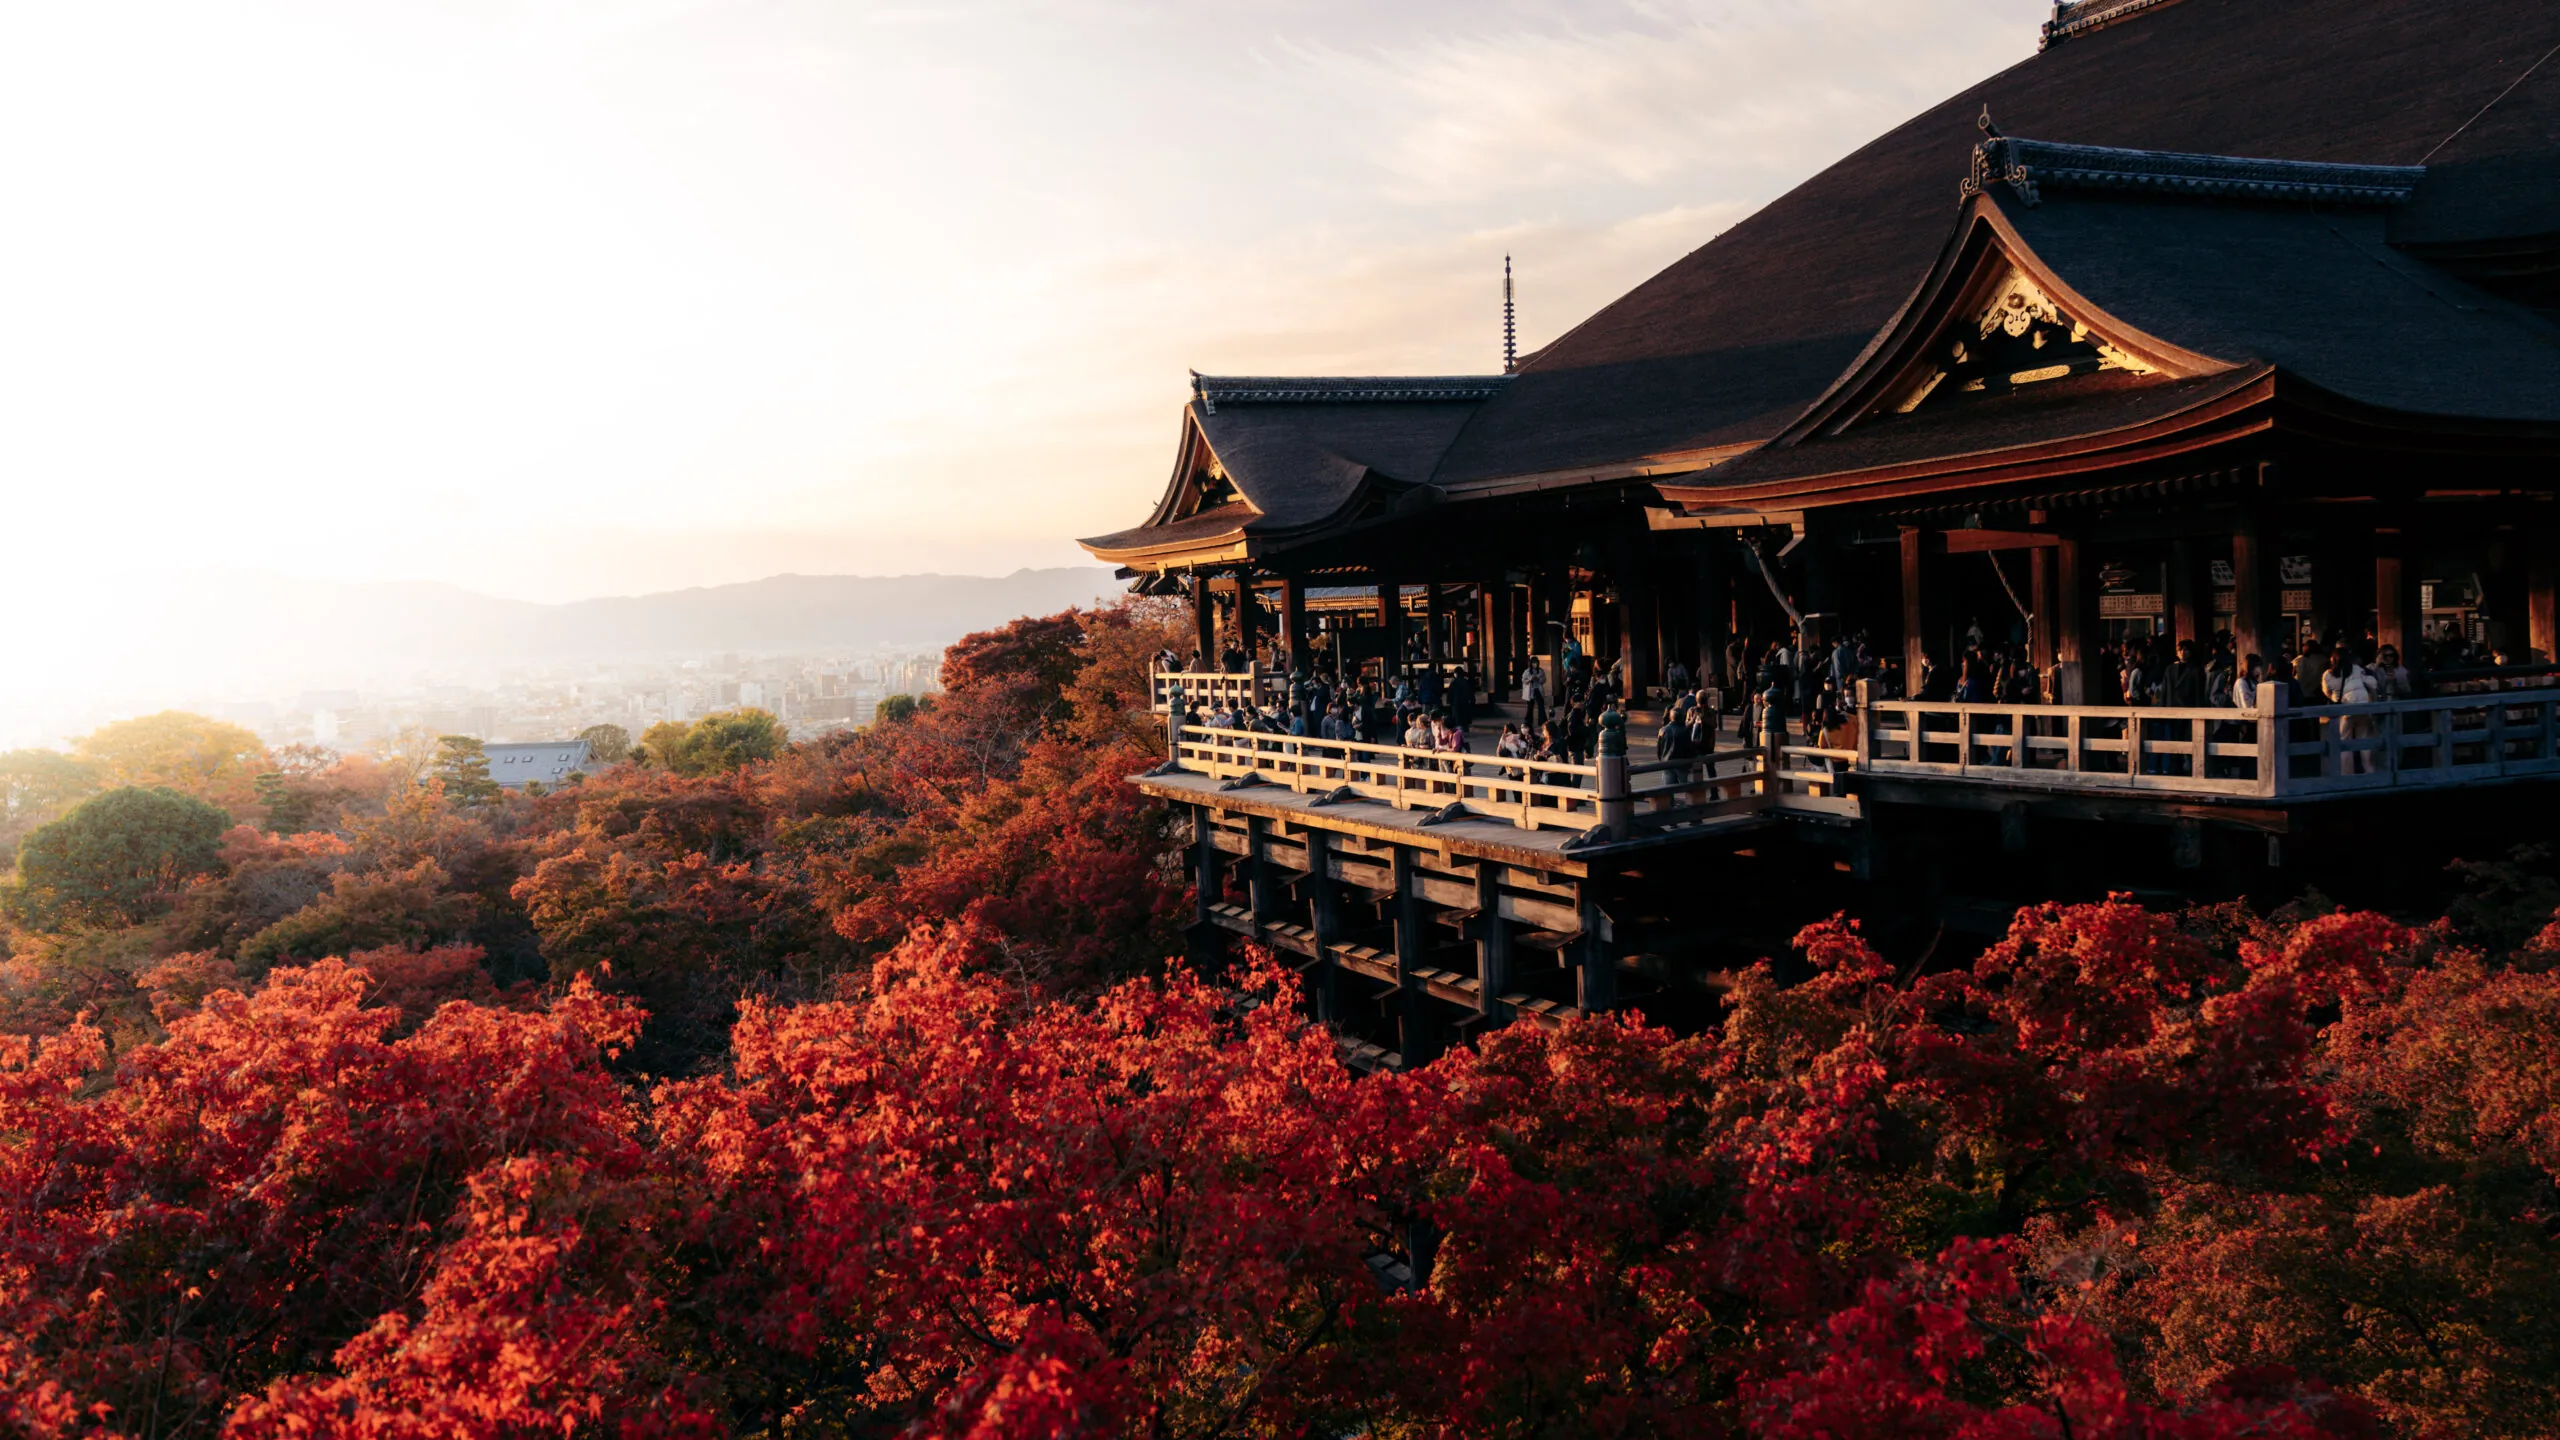 נוף מקדש ביפן בסתיו 